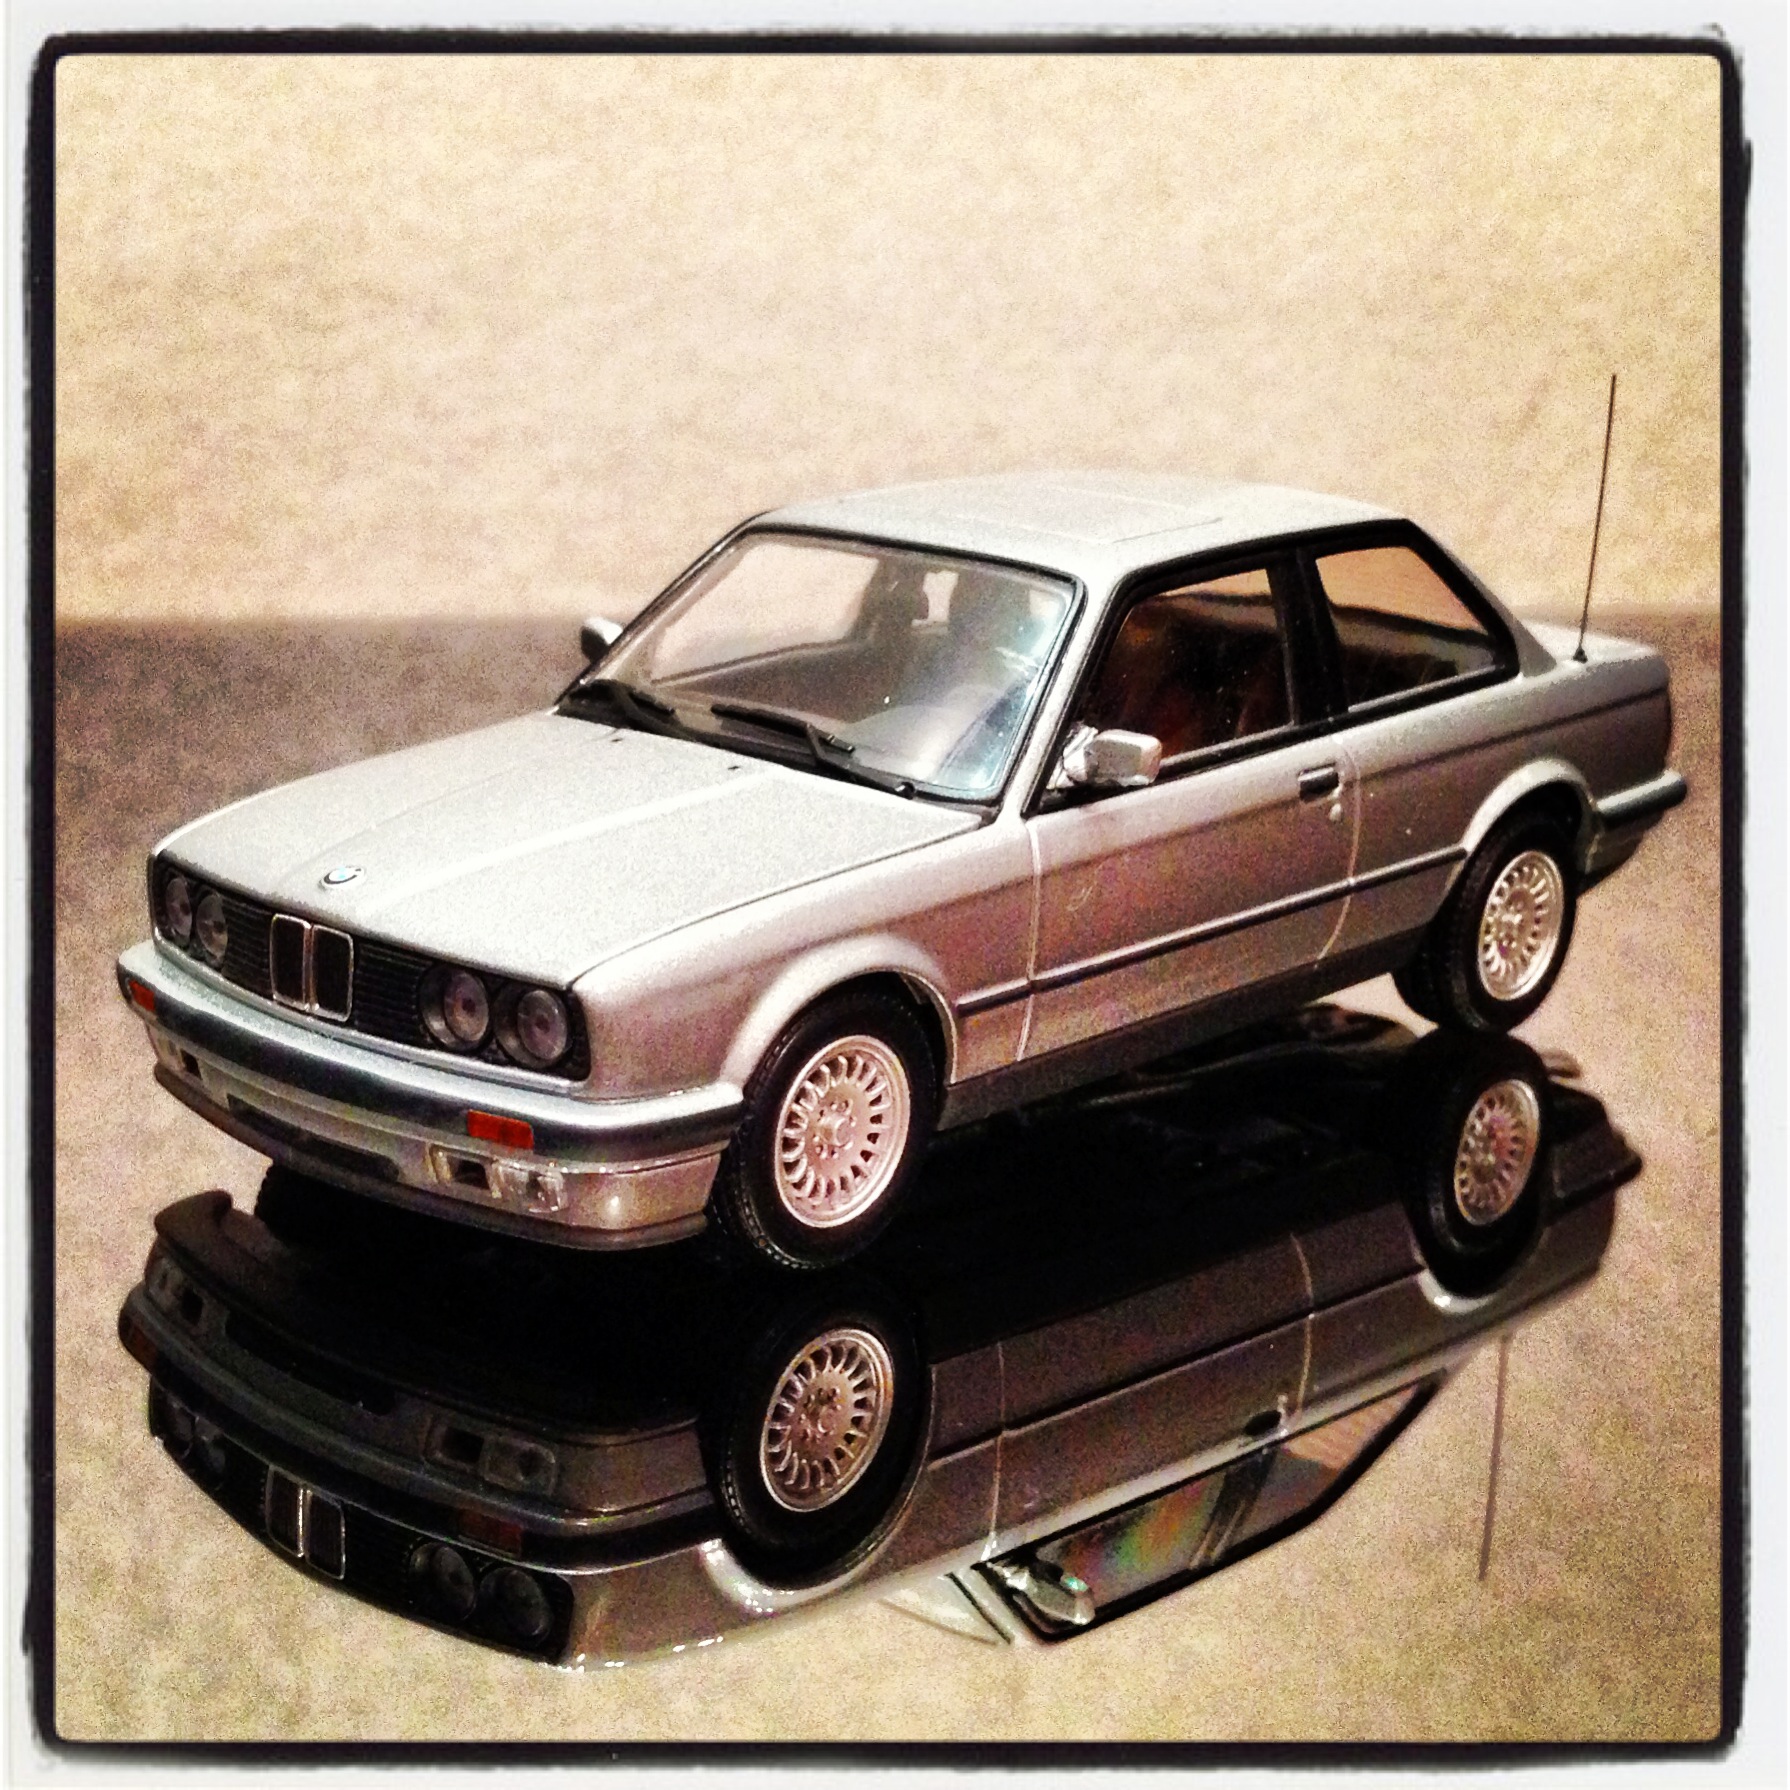 BMW 3 series coupe (E30) silver, le  1 of 1,536pcs. (minichamps)